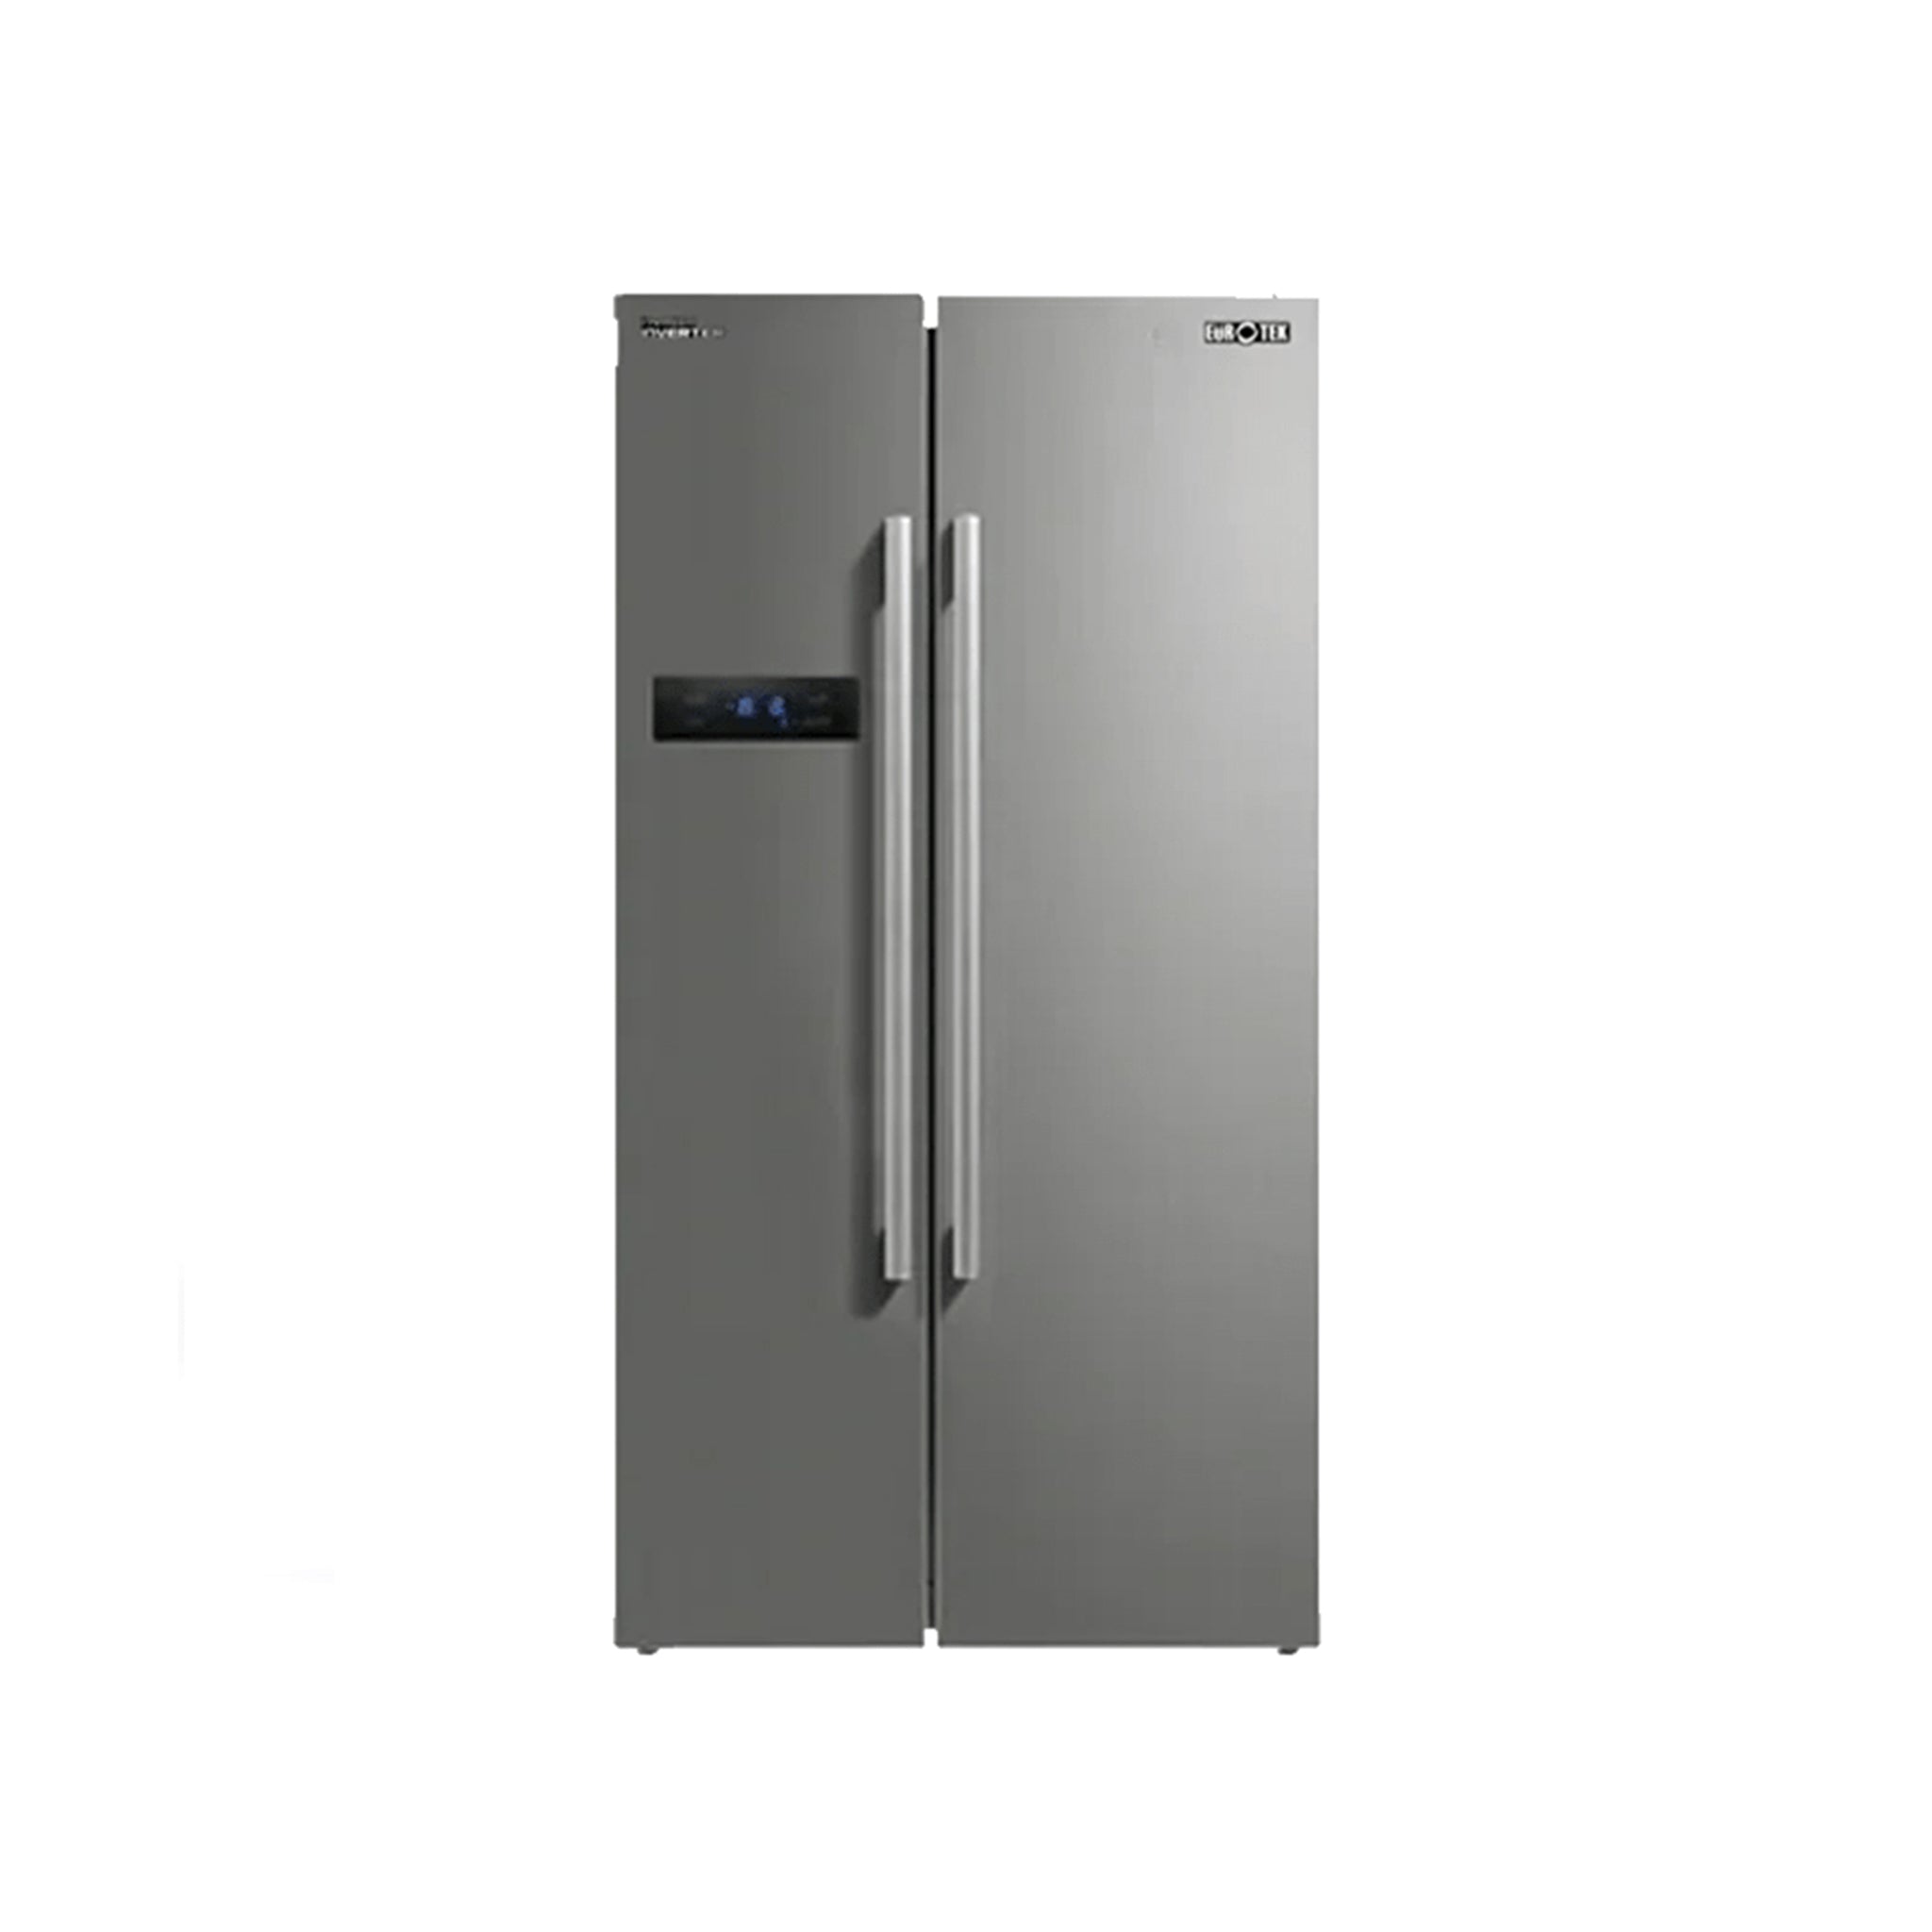 EUROTEK 22.0 CU.FT. ESS-222IN Side by Side Refrigerator Premium Inverter Eurotek